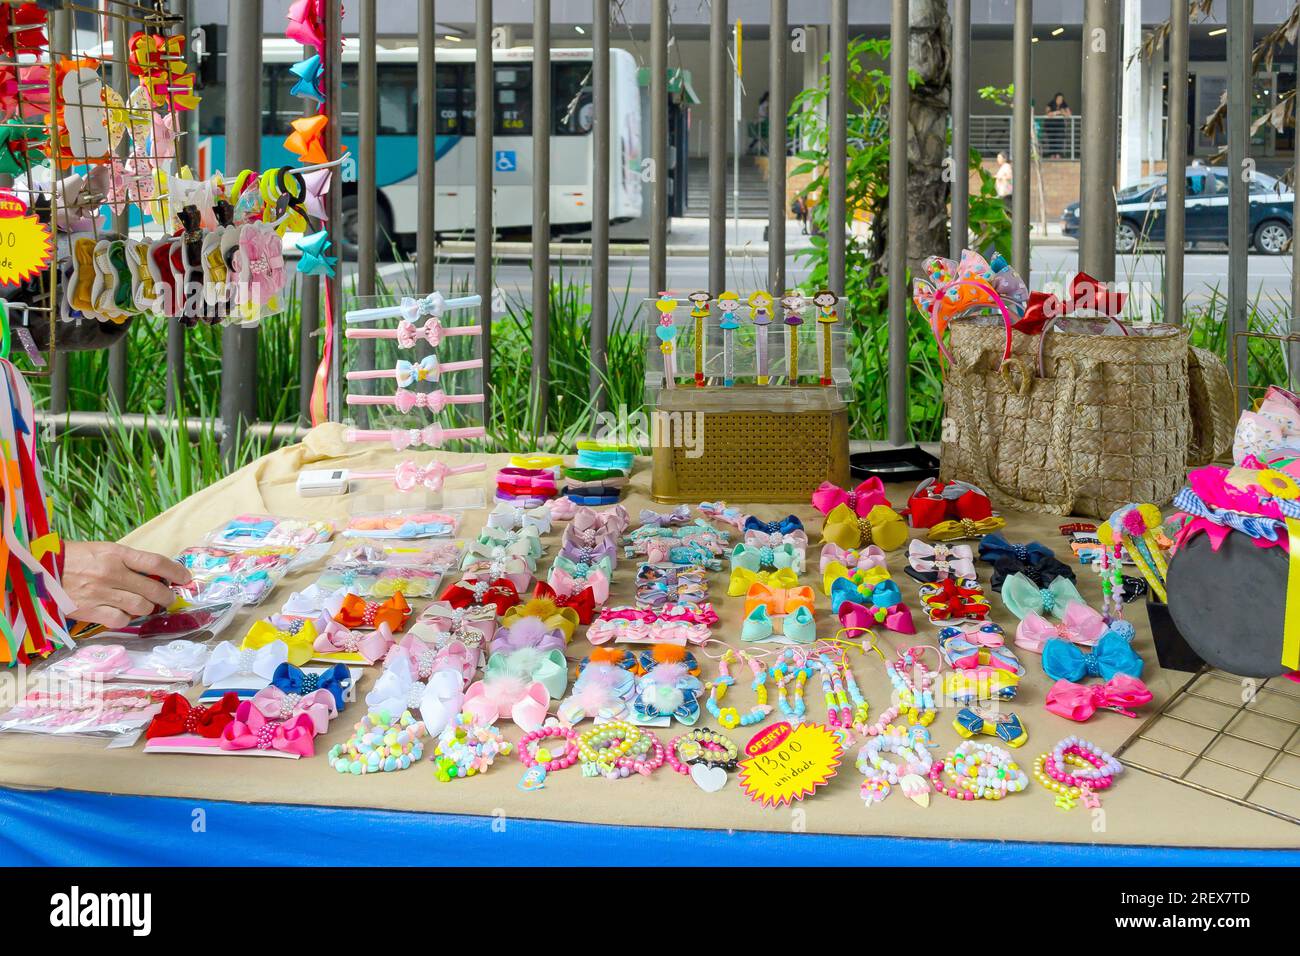 Niteroi, Brasilien, Eine Gruppe von Gegenständen oder Souvenirs mit lebhaften Farben werden in einem Kiosk oder Verkaufsstand ausgestellt. Die Gegenstände sind handgefertigt. Stockfoto